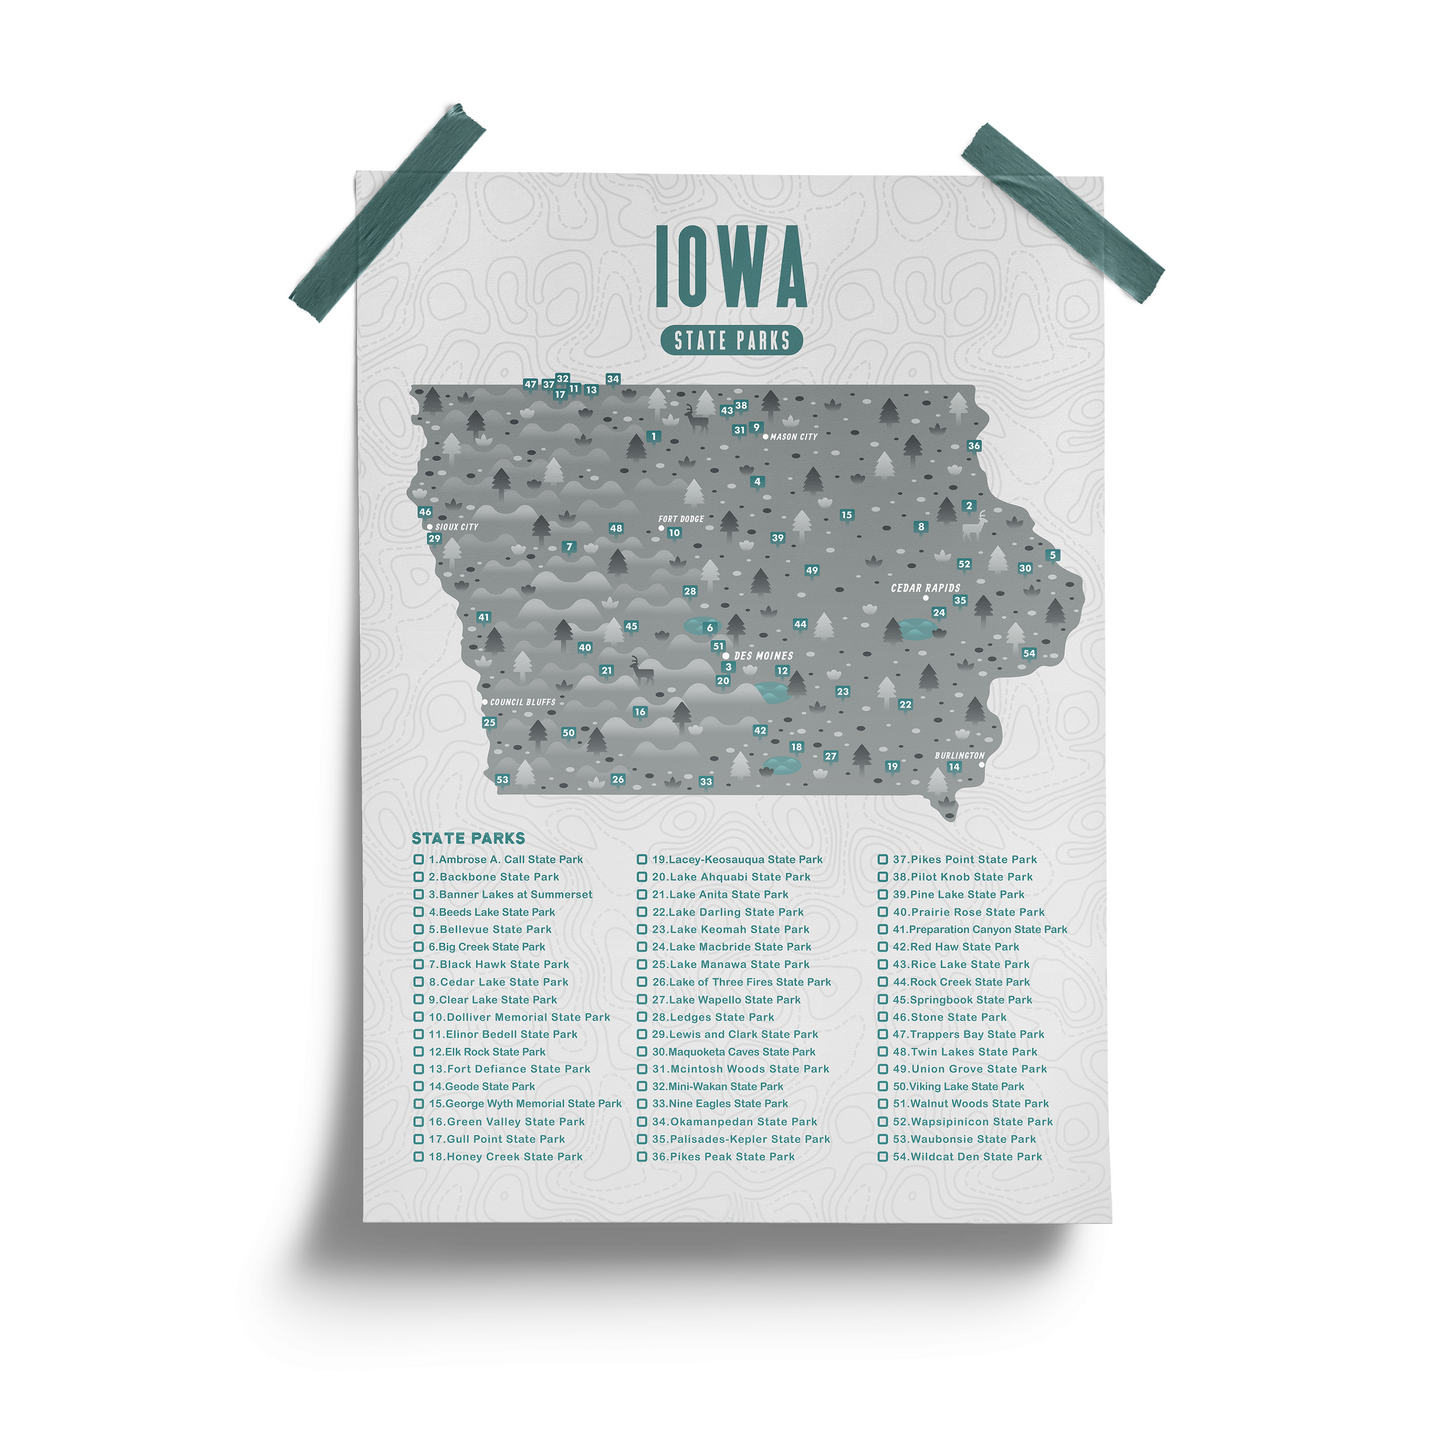 Iowa State Park Map - Checklist